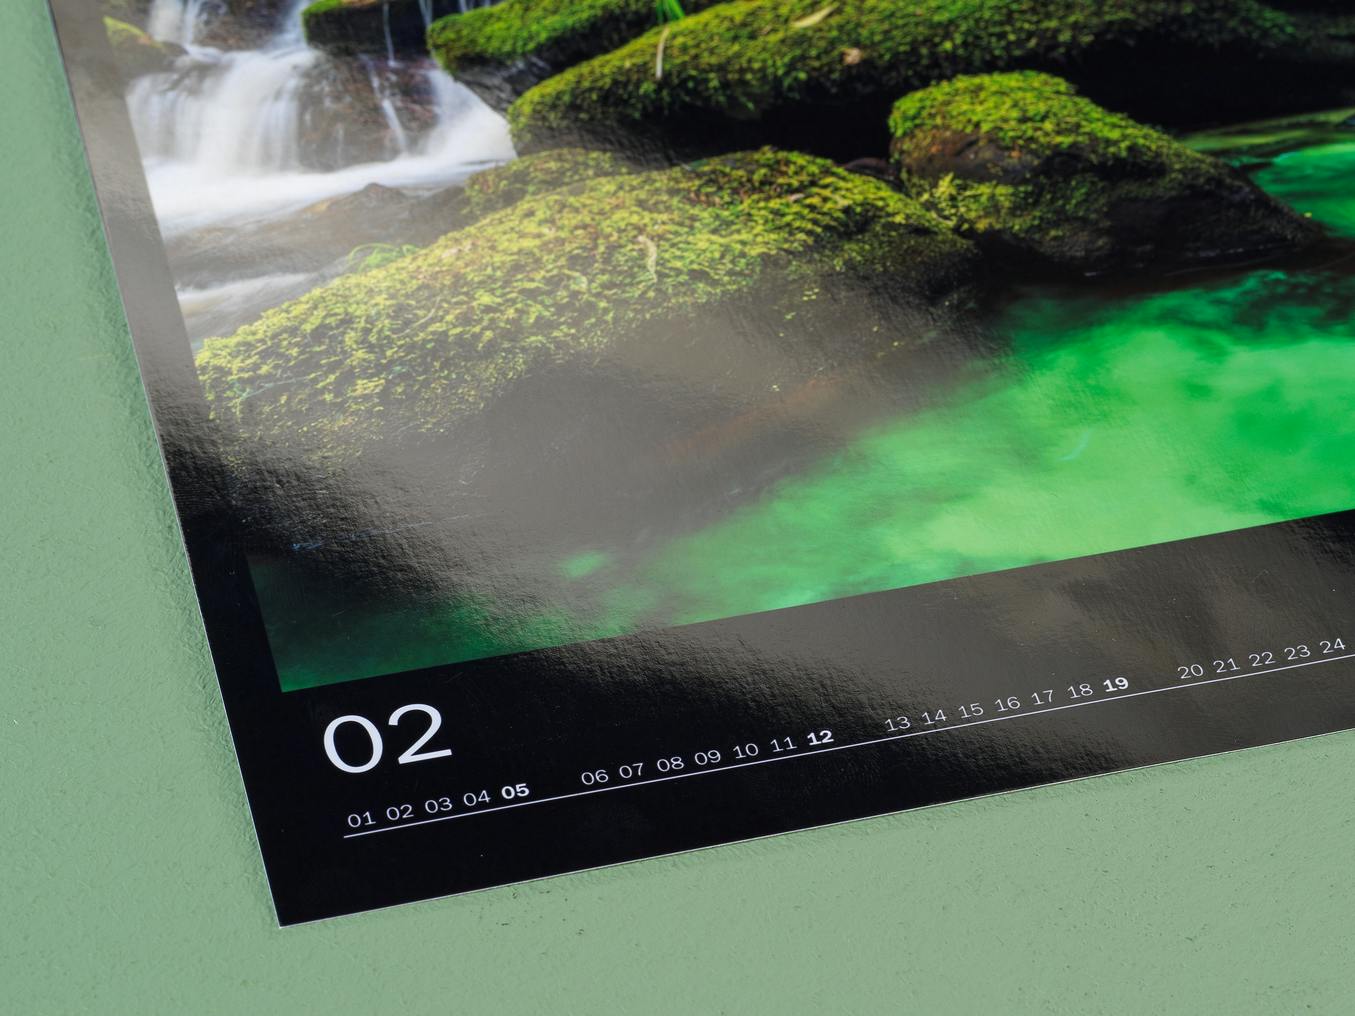 Vue détaillée d'un calendrier photo avec papier photo brillant